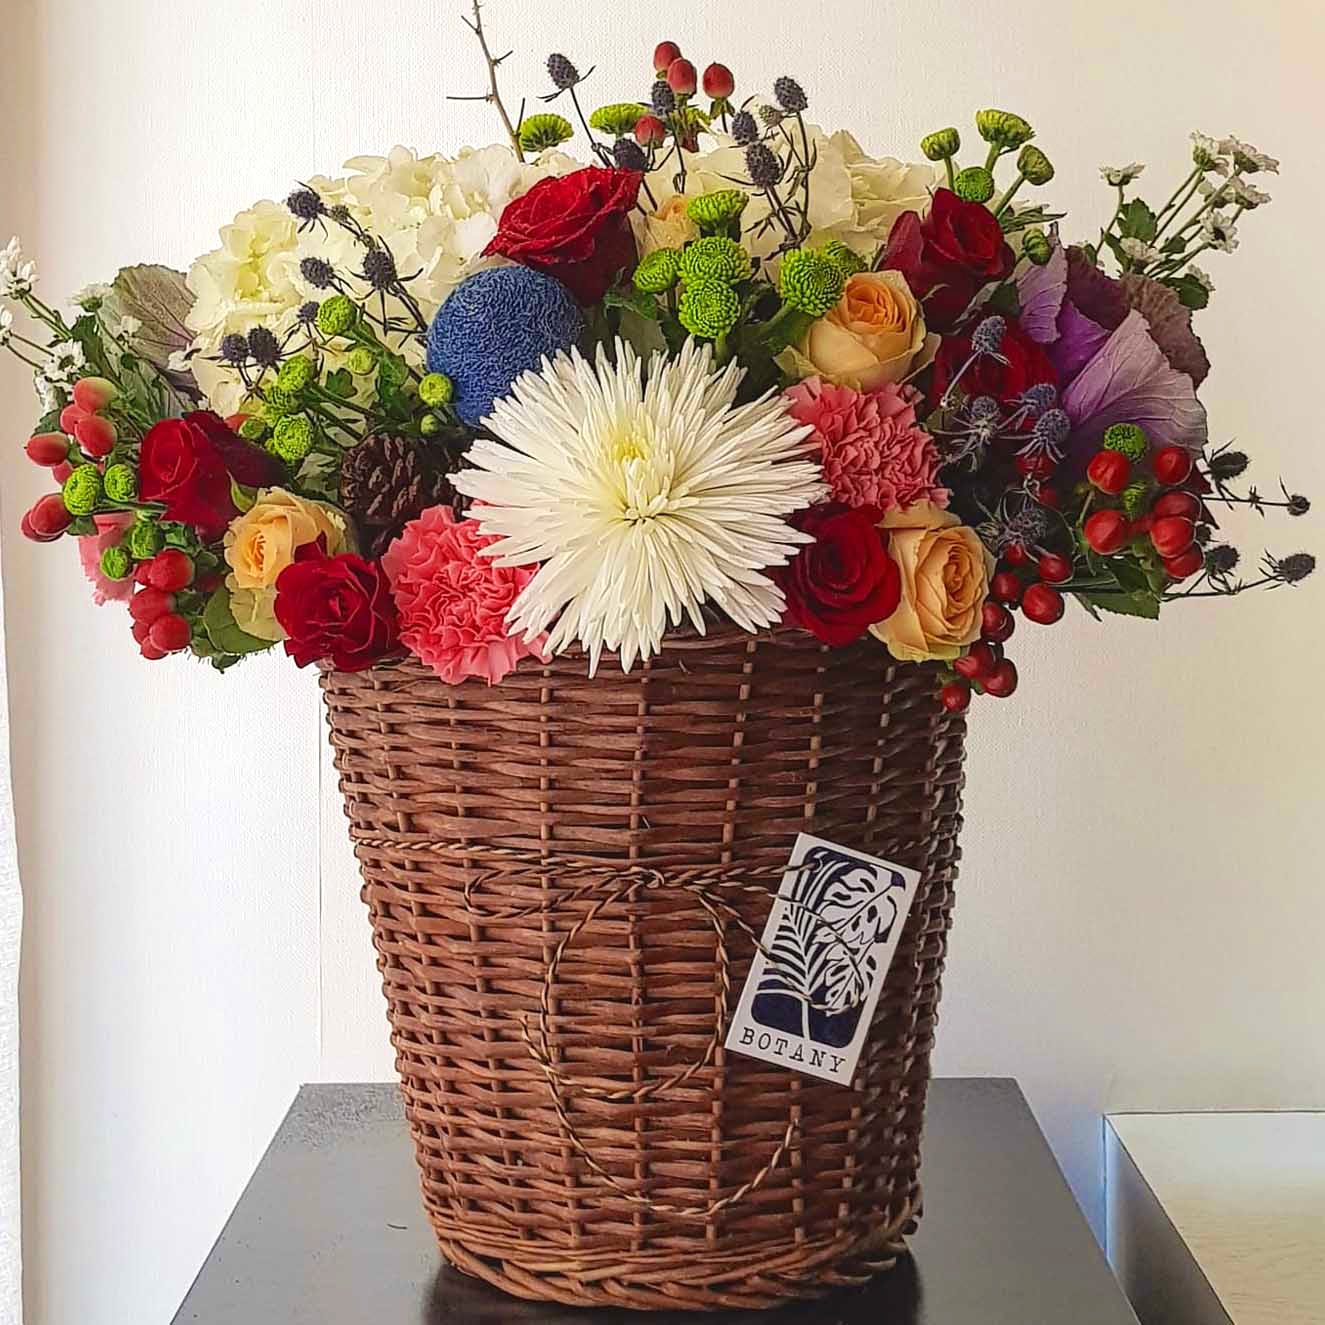 Flower,Flowerpot,Flower Arranging,Cut flowers,Floristry,Bouquet,Floral design,Plant,Artificial flower,Vase